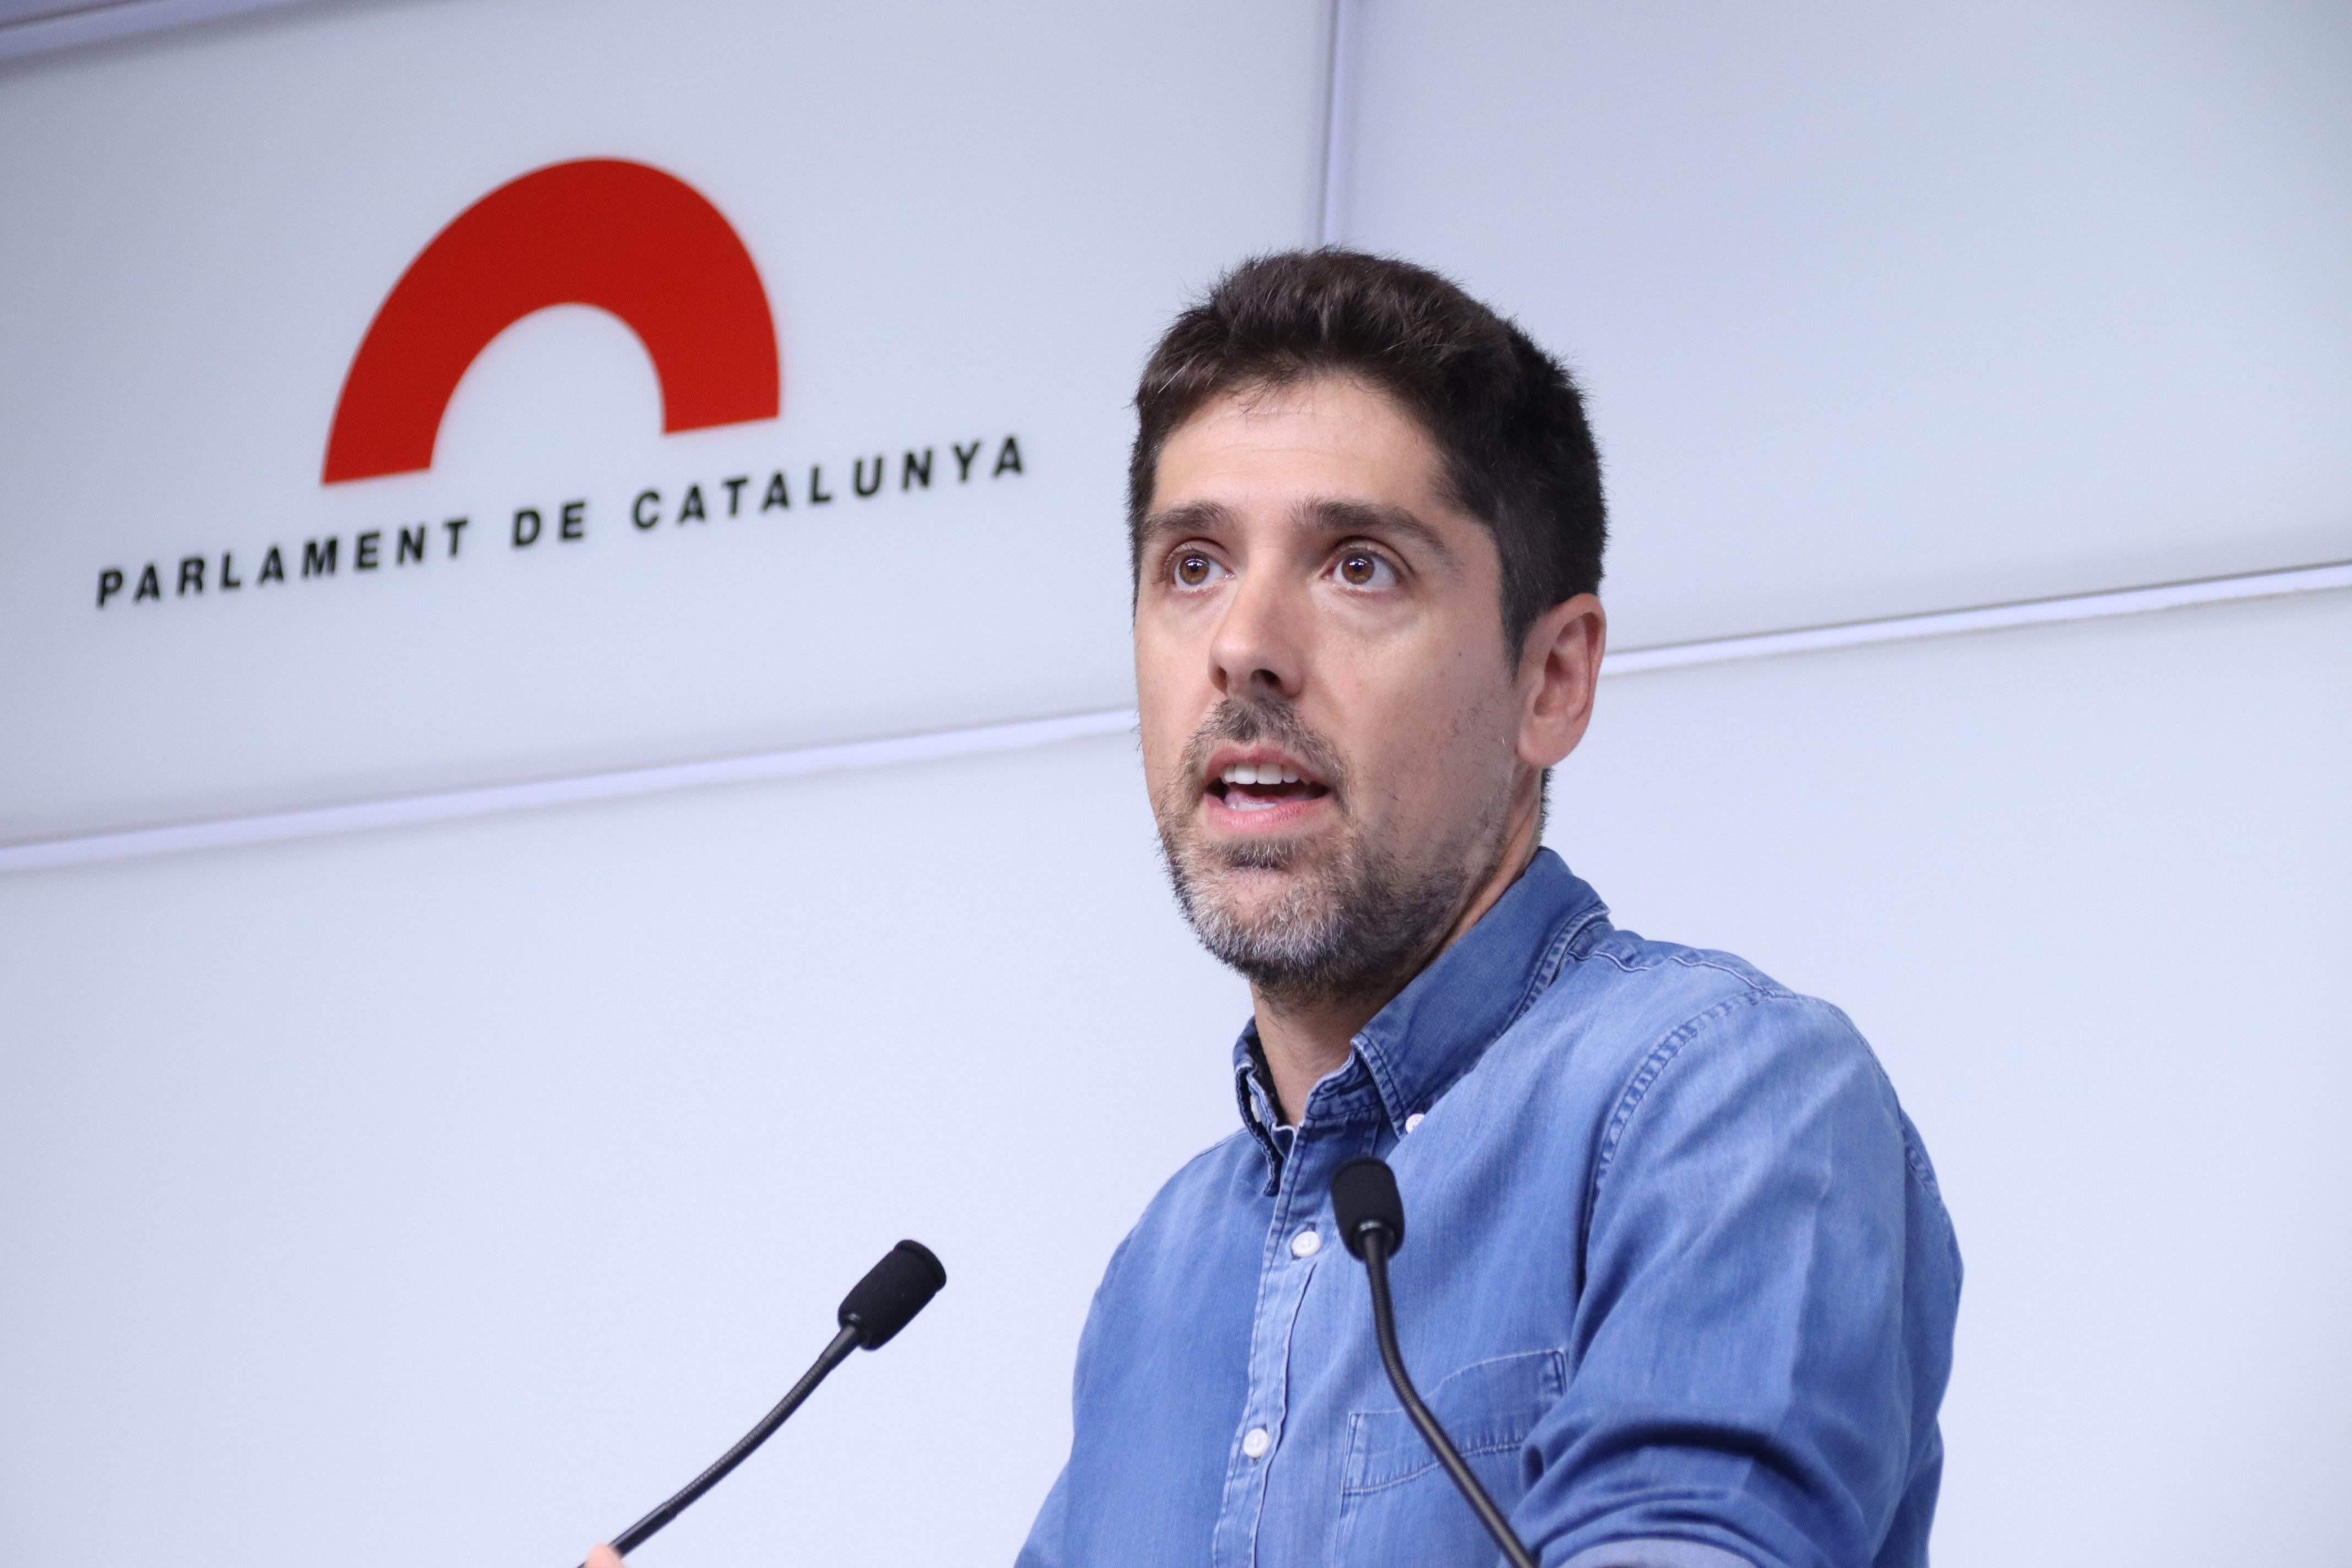 Els comuns celebren la reunió entre Puigdemont i el número 3 del PSOE: "És el camí a seguir"